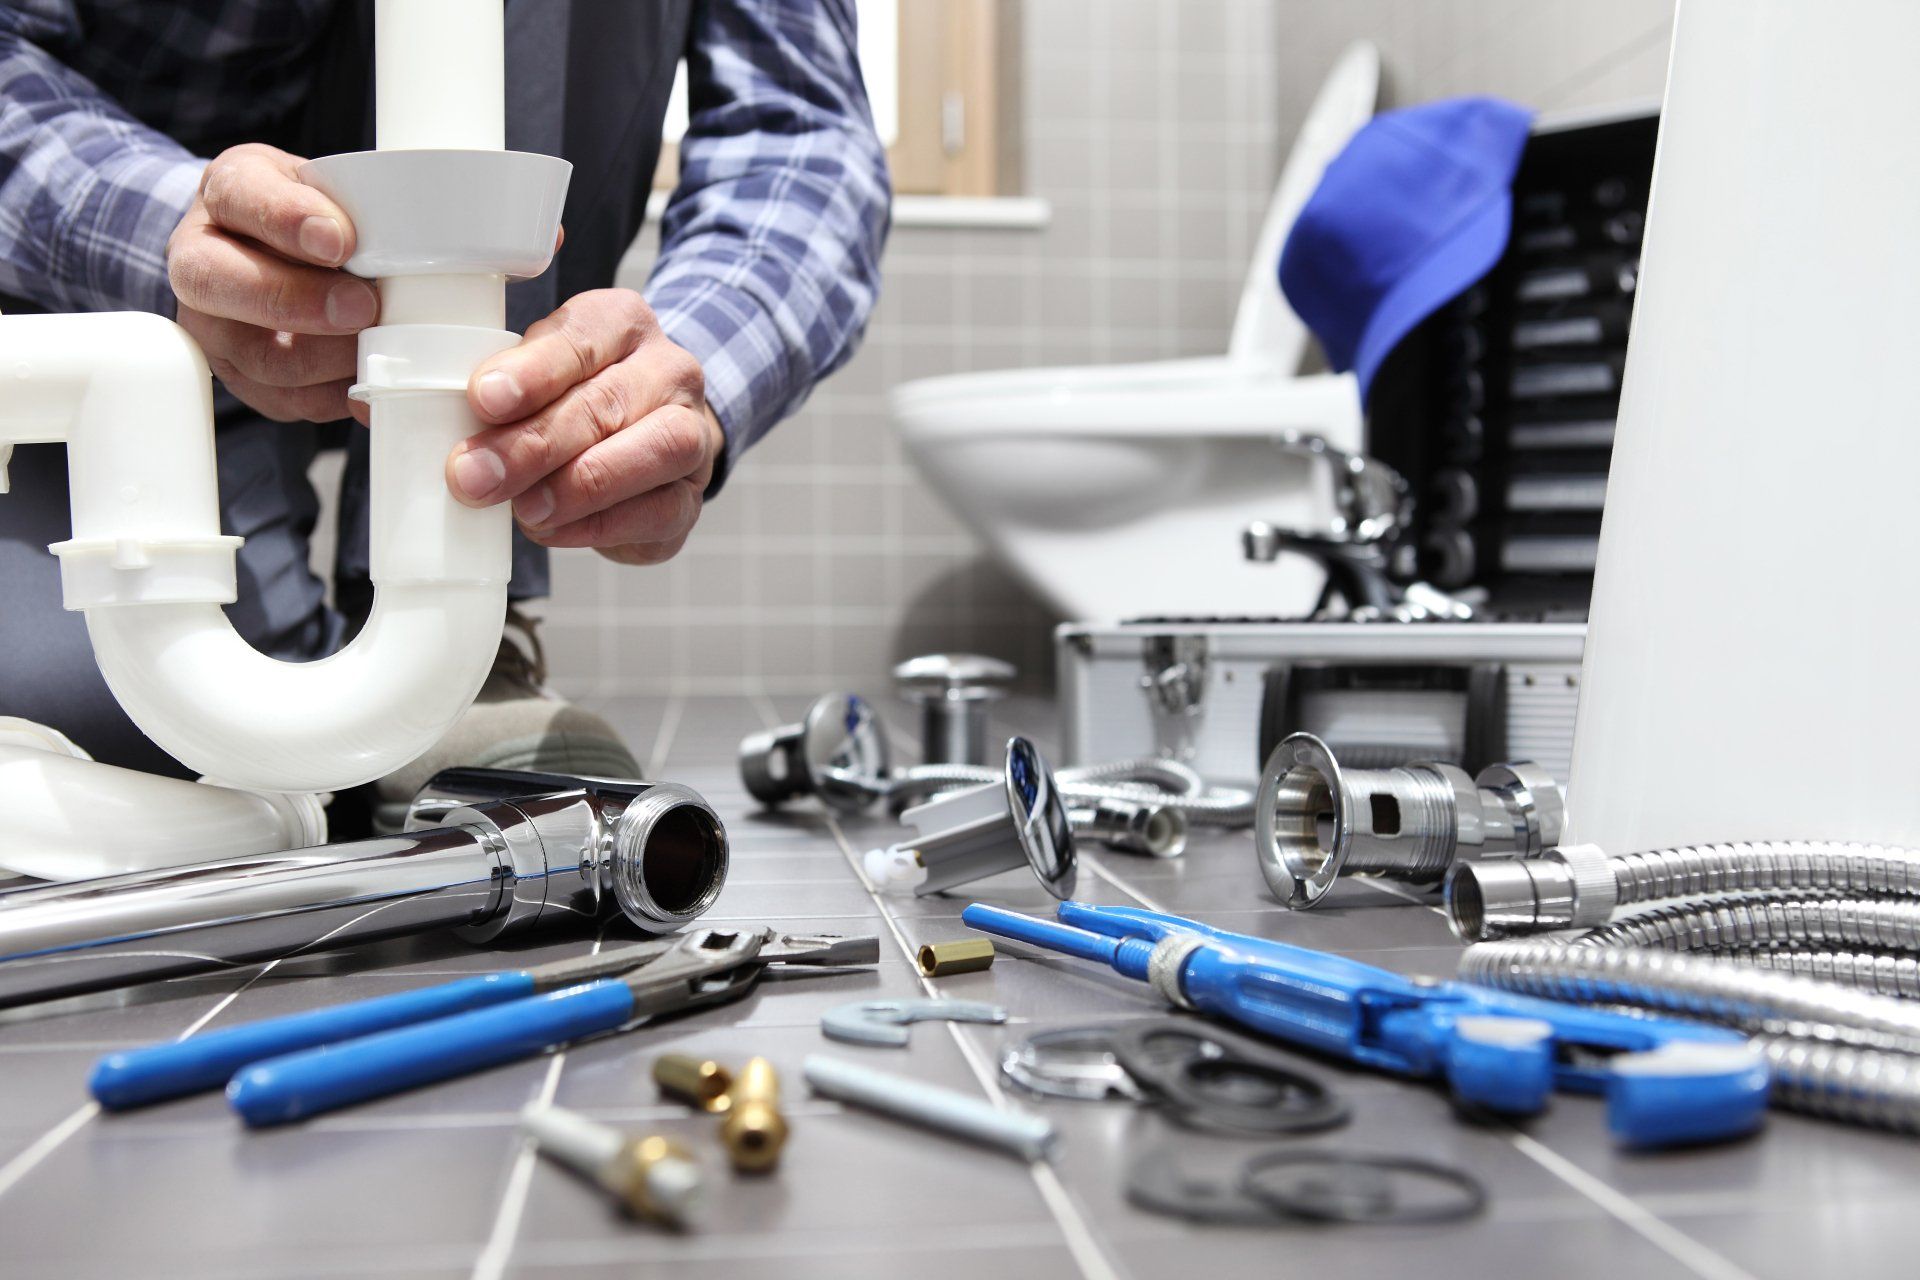 Plumbing repair with plumbing tools